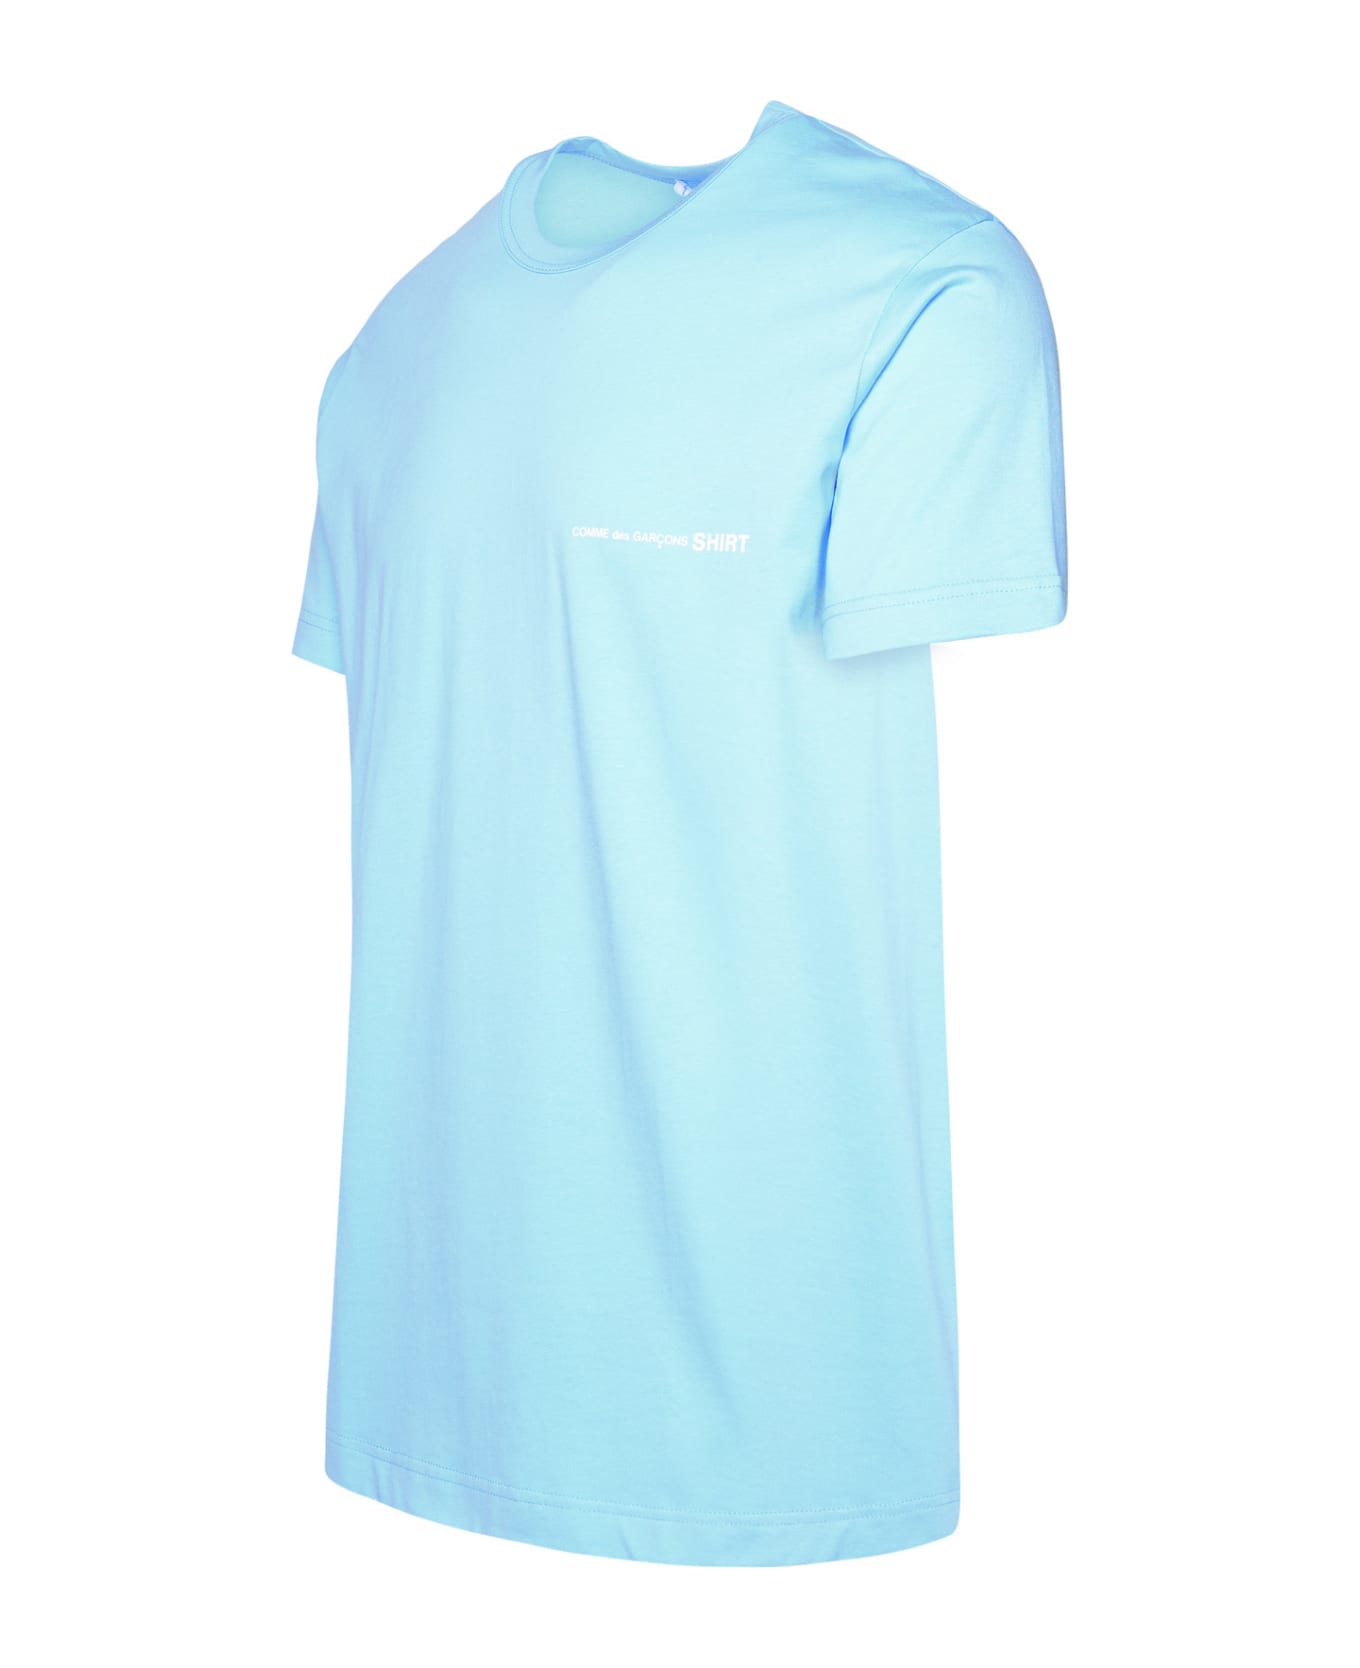 Comme des Garçons Shirt Light Blue Cotton T-shirt - Light Blue